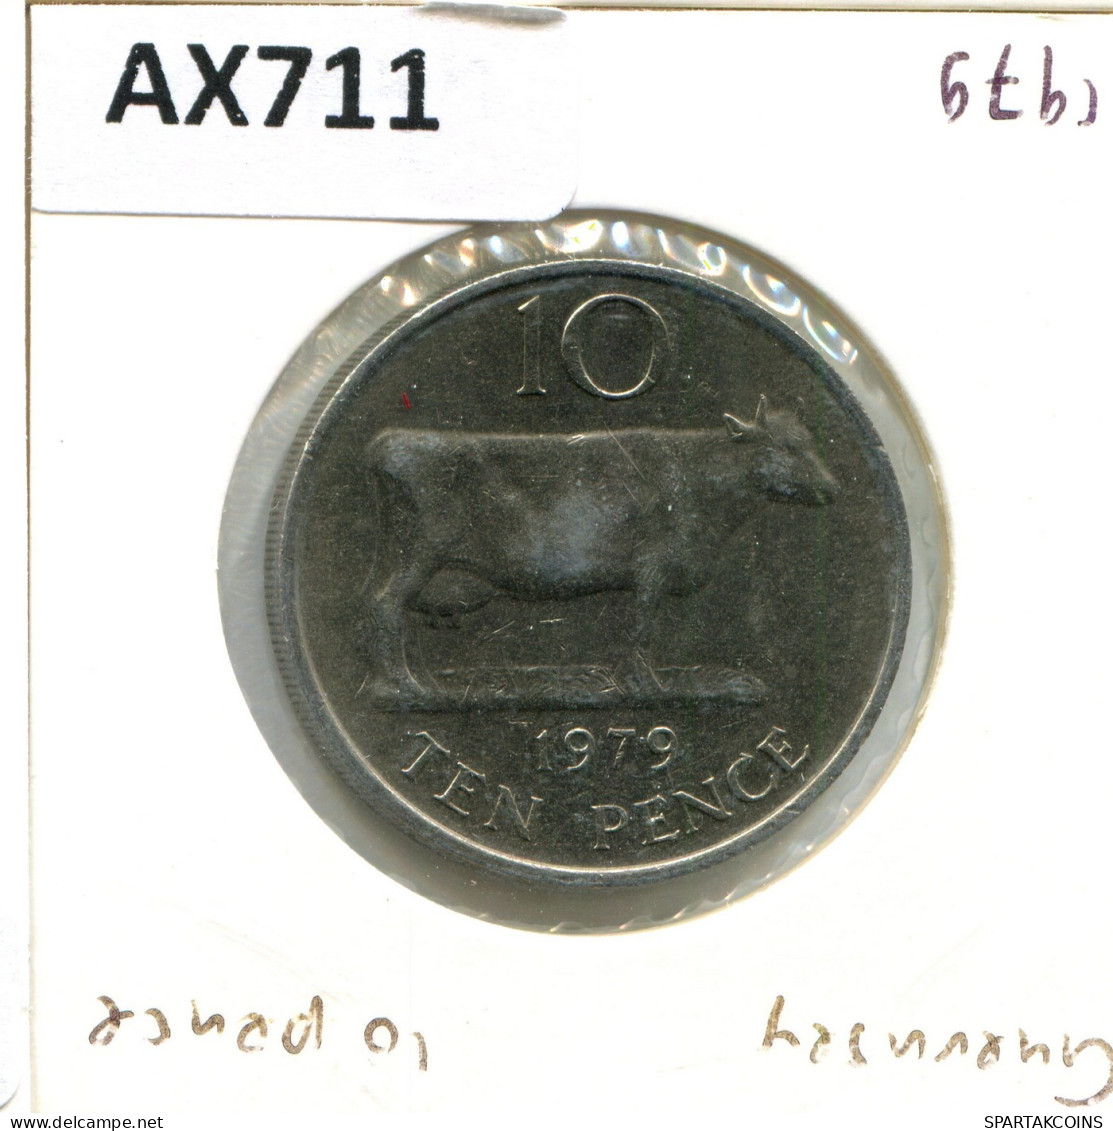 10 PENCE 1979 GUERNSEY Coin #AX711.U.A - Guernsey